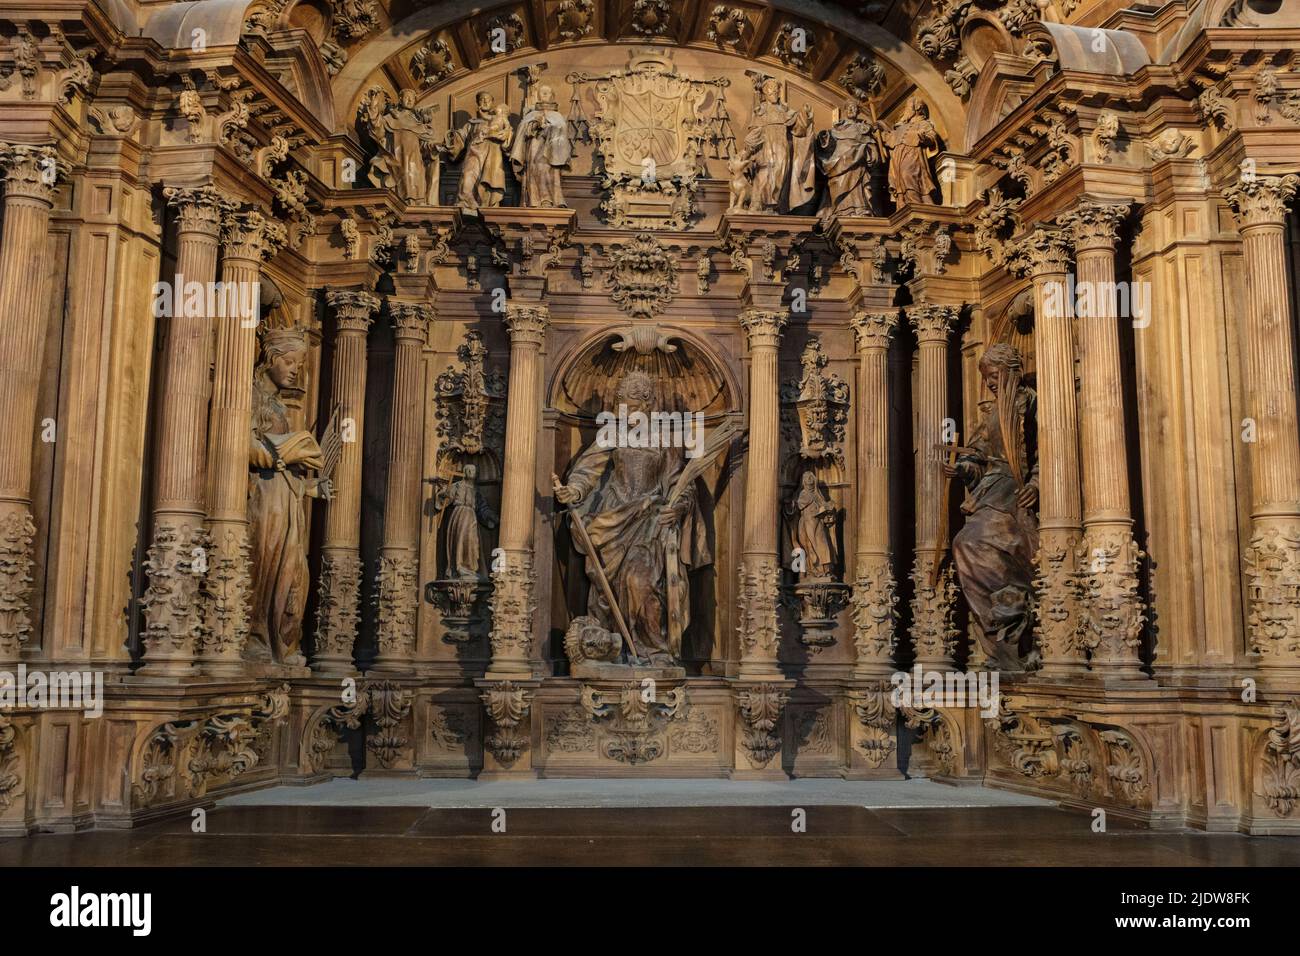 España, Burgos. Catedral de Santa María, Patrimonio de la Humanidad. Retablo, Capilla de Santa Catalina. Foto de stock